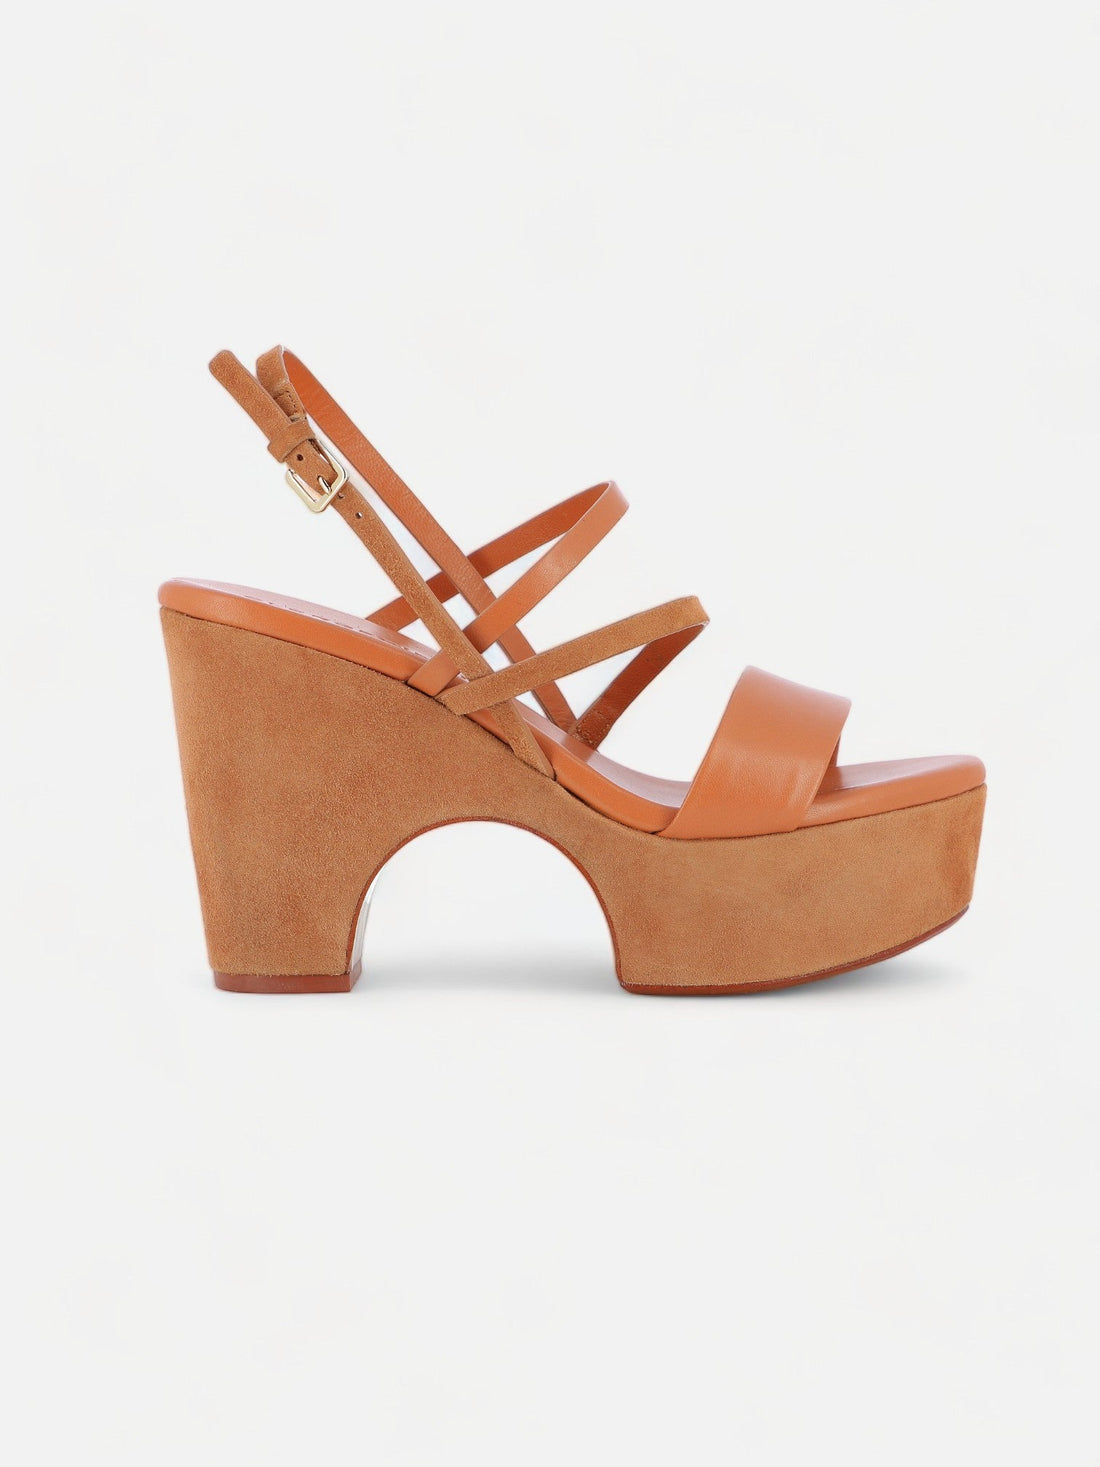 SANDALS - VOGUE sandals, lambskin brown - 3606063985475 - Clergerie Paris - Europe